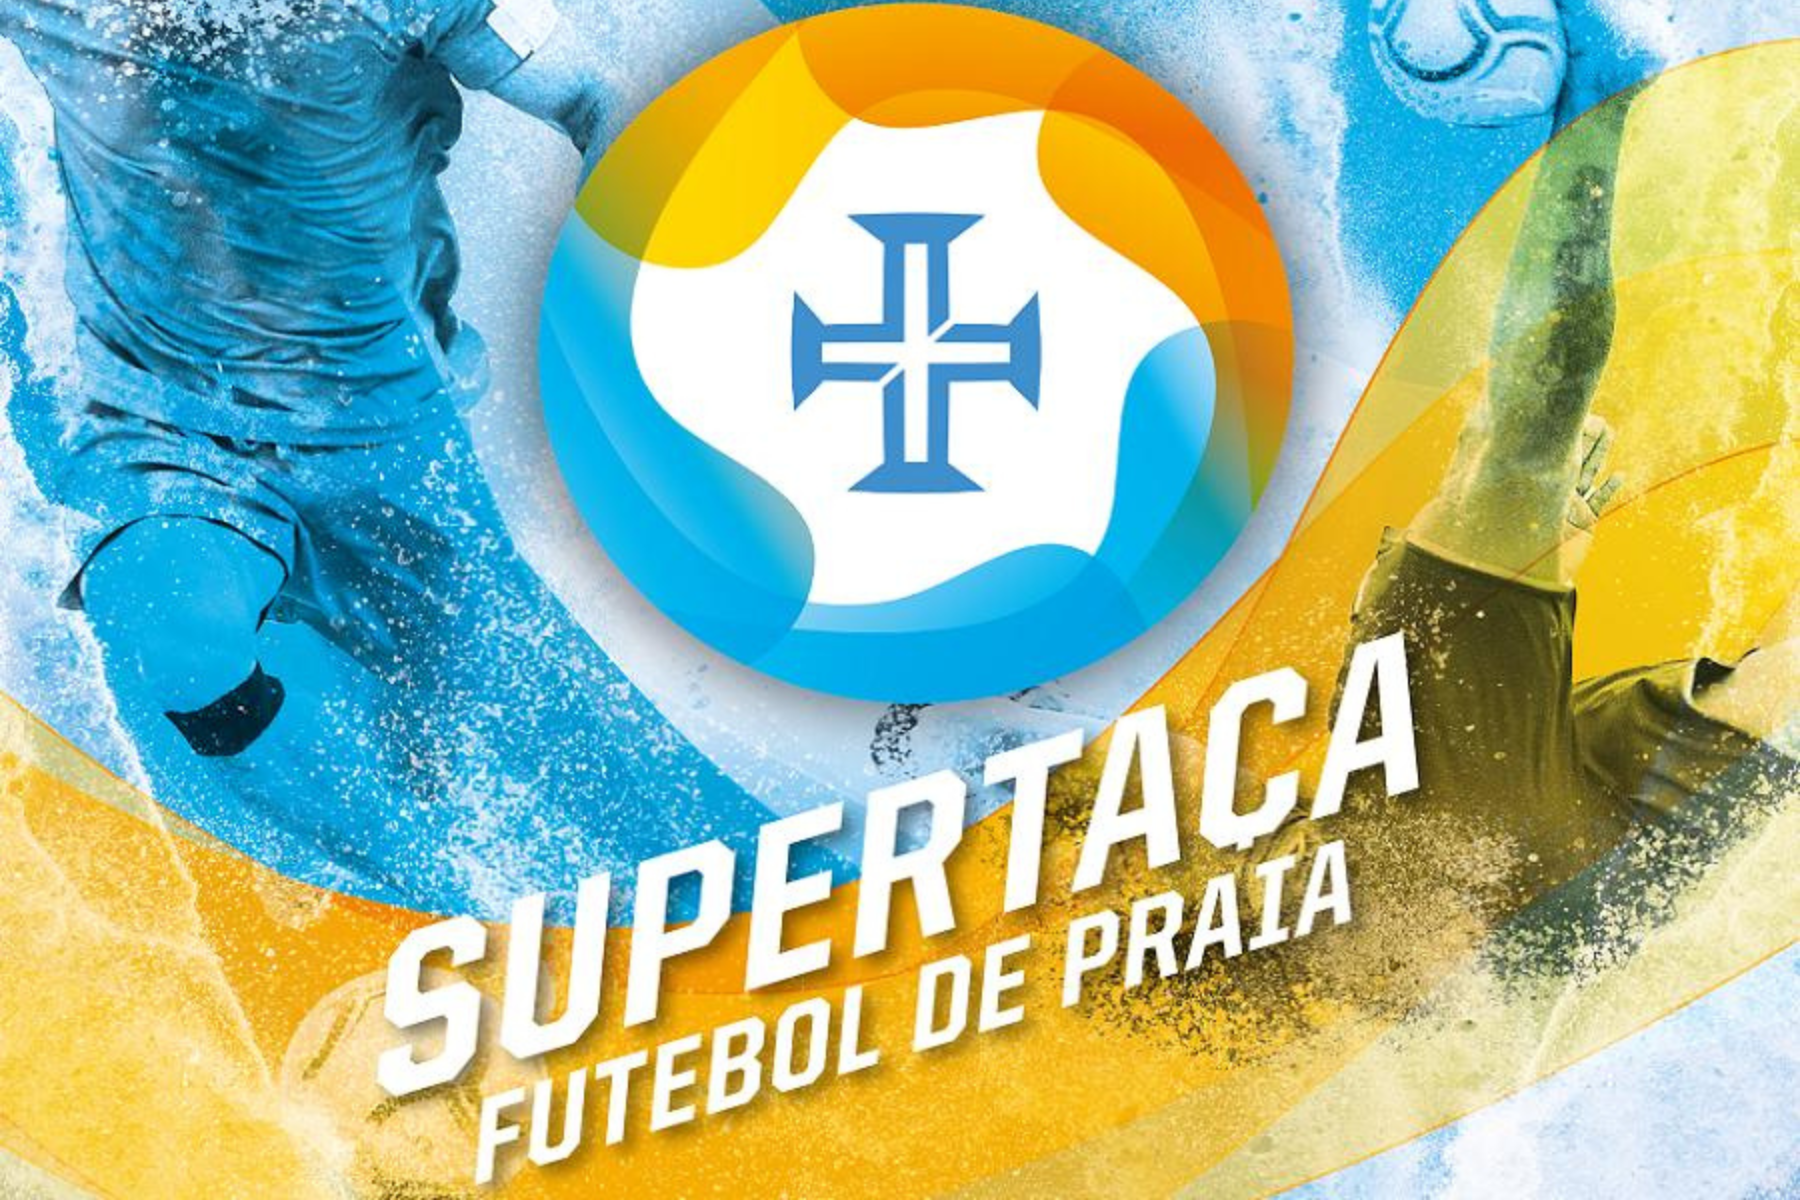 ACD "O Sótão" disputa Supertaça de Futebol de Praia